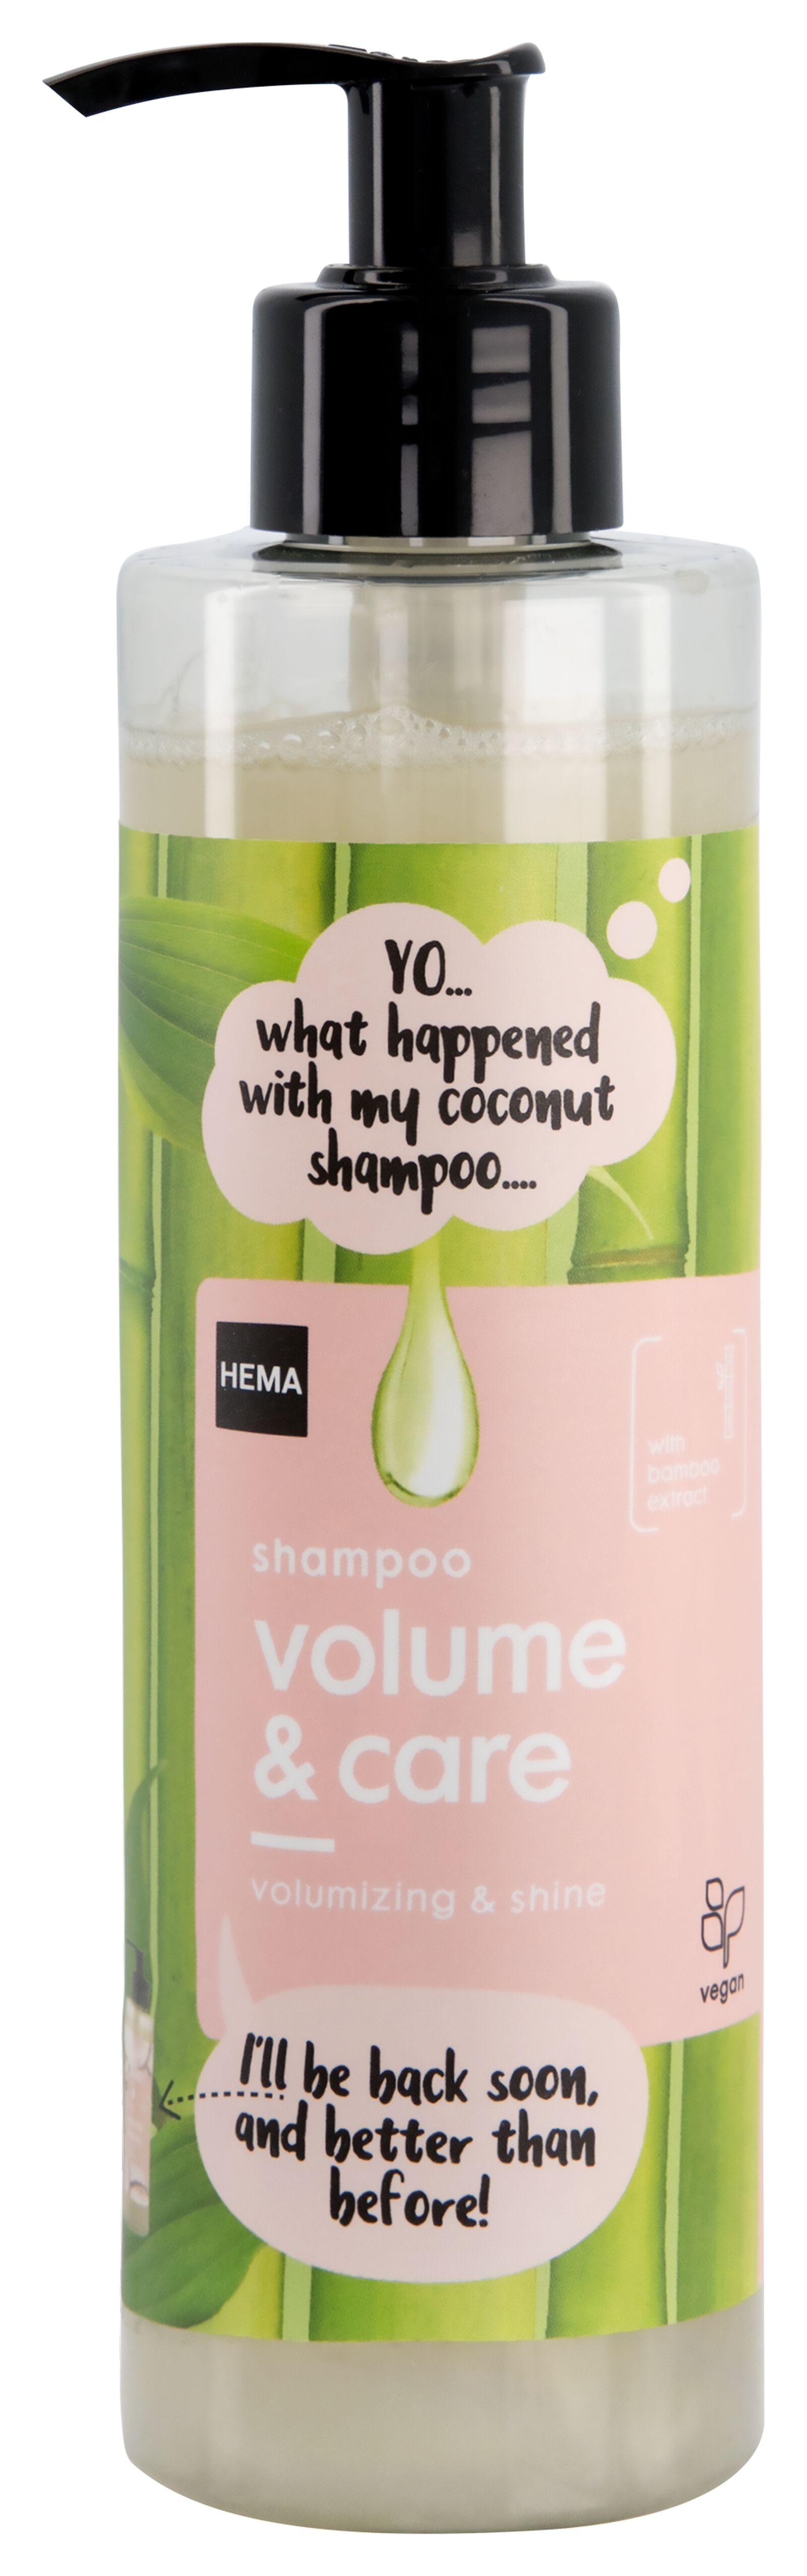 HEMA Shampoo Volume & Care 300ml